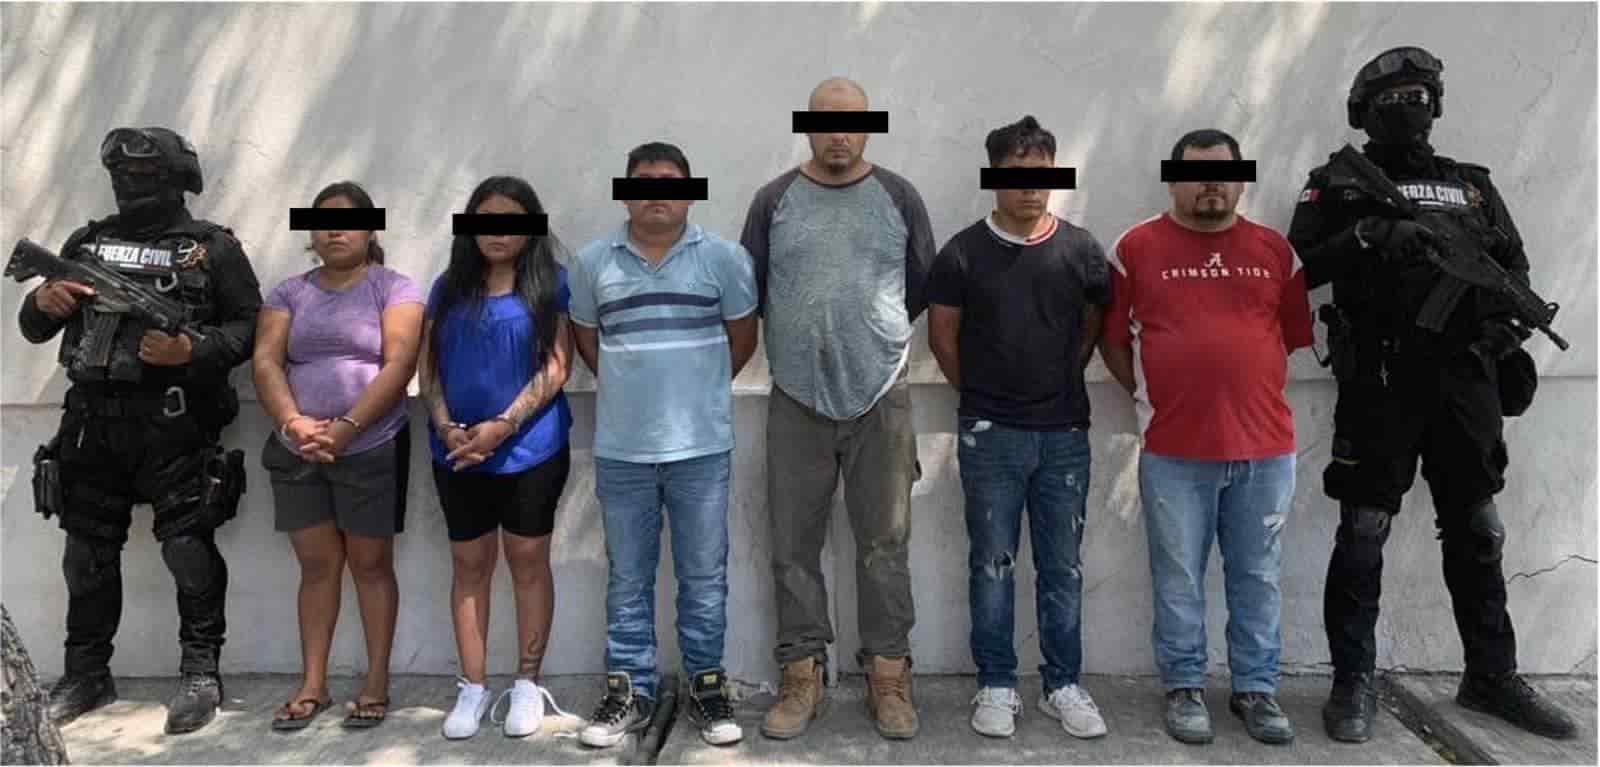 Elementos de Fuerza Civil desarticuló una célula perteneciente a un grupo de la delincuencia organizada con presencia nacional, en Juárez.